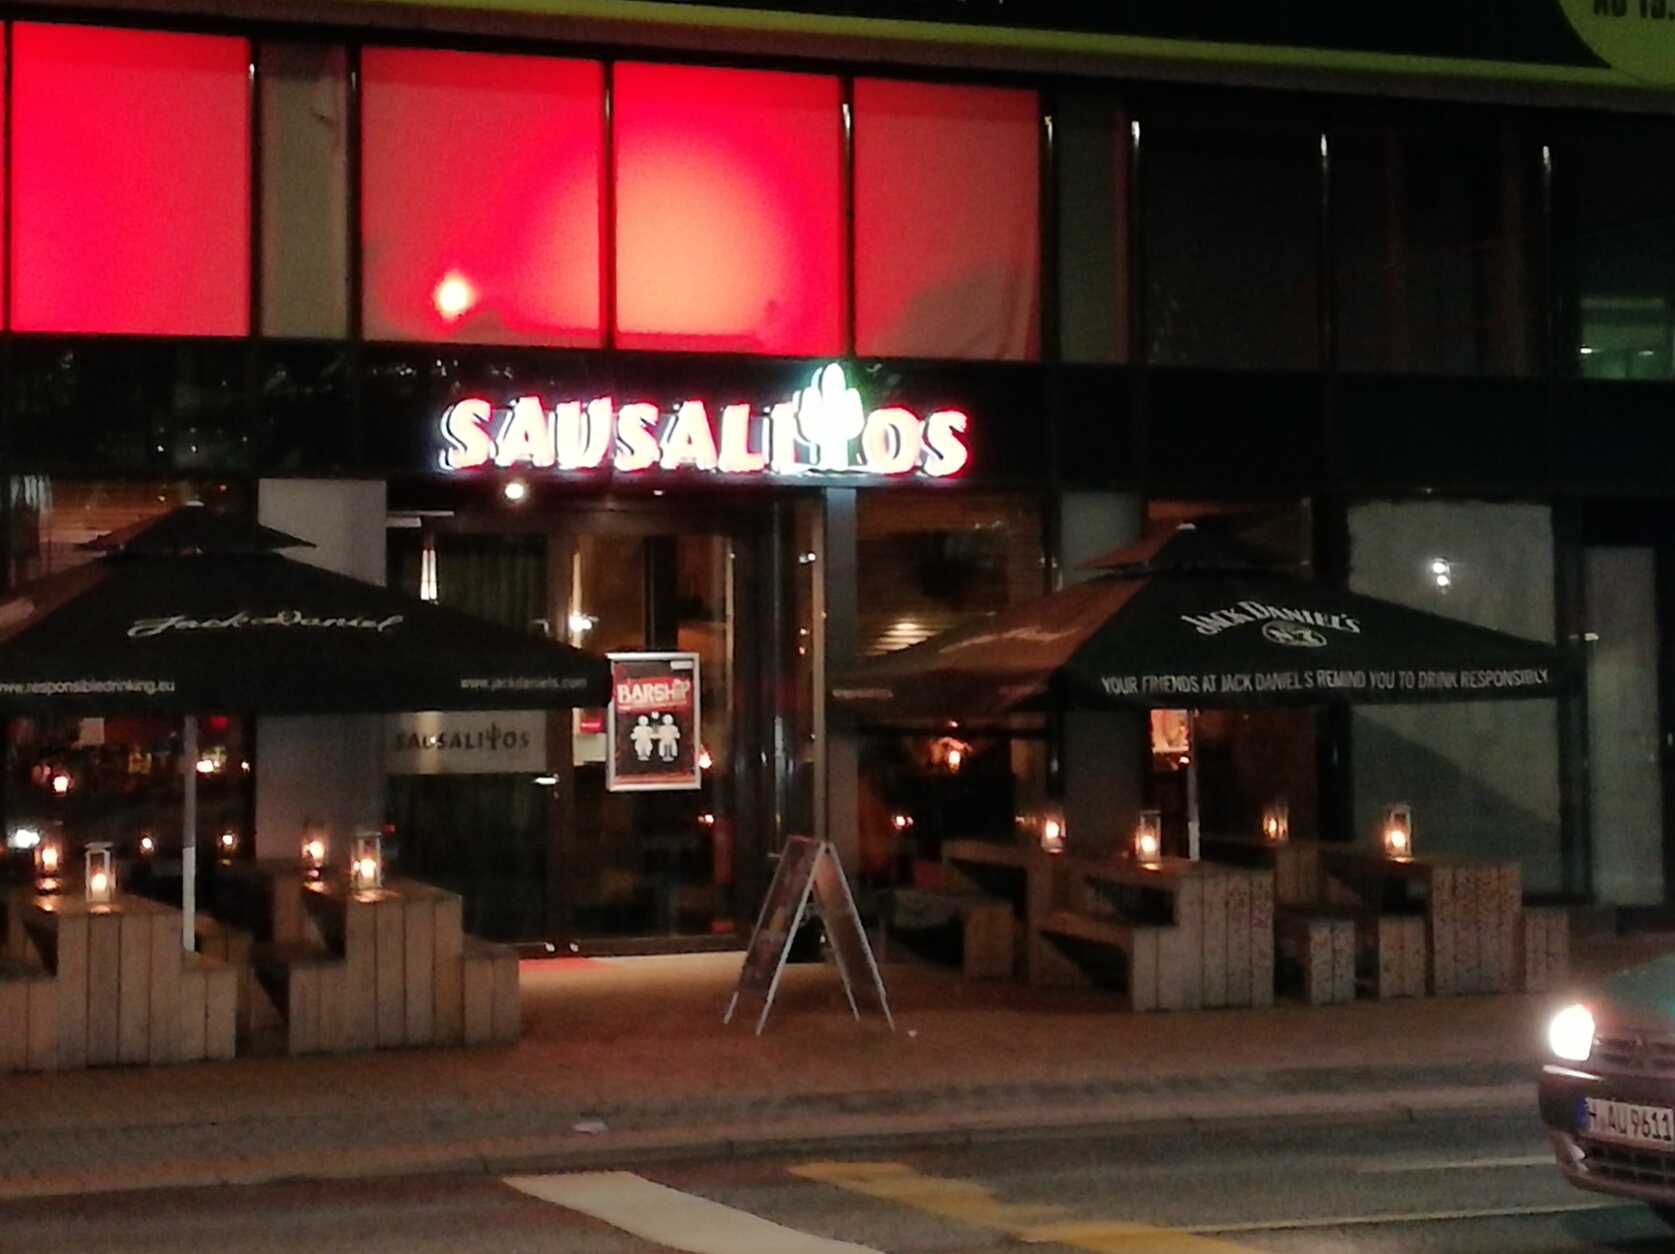 Das Sausalitos auf der Lister Meile in Hannover